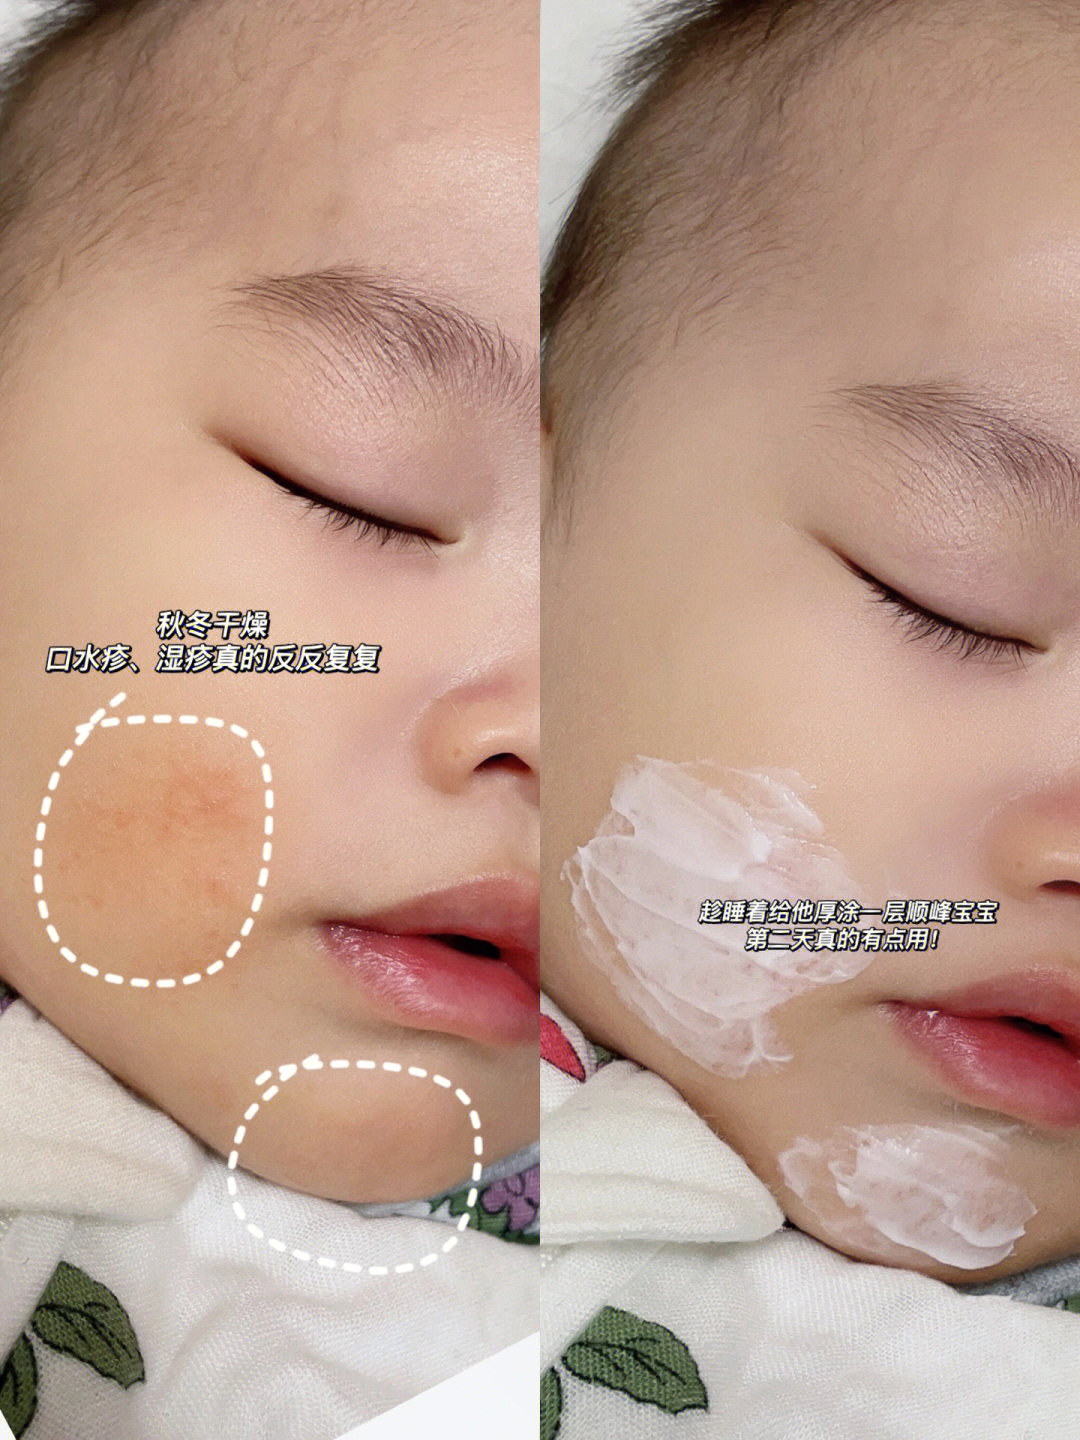 要让皮肤保持湿润,面霜洗完脸就要涂,尤其爱流口水的宝宝